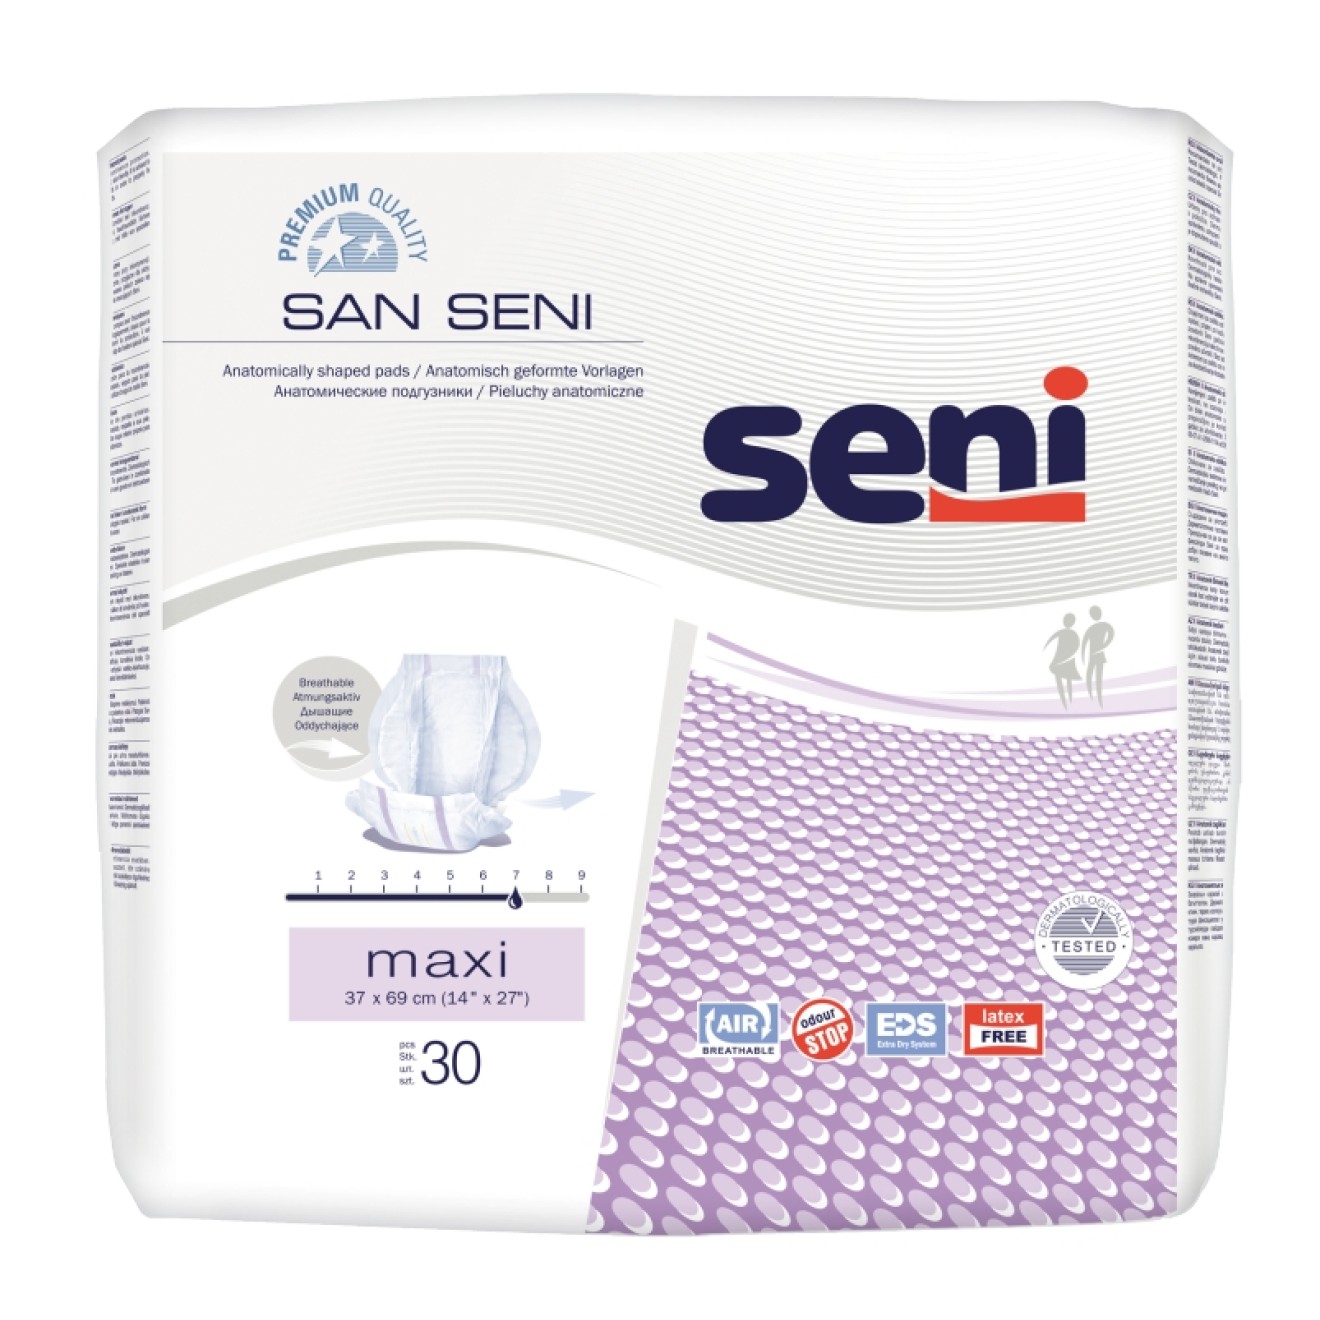 San Seni, BestiMed Pharmaversand und Inkontinenz Onlineshop schnell